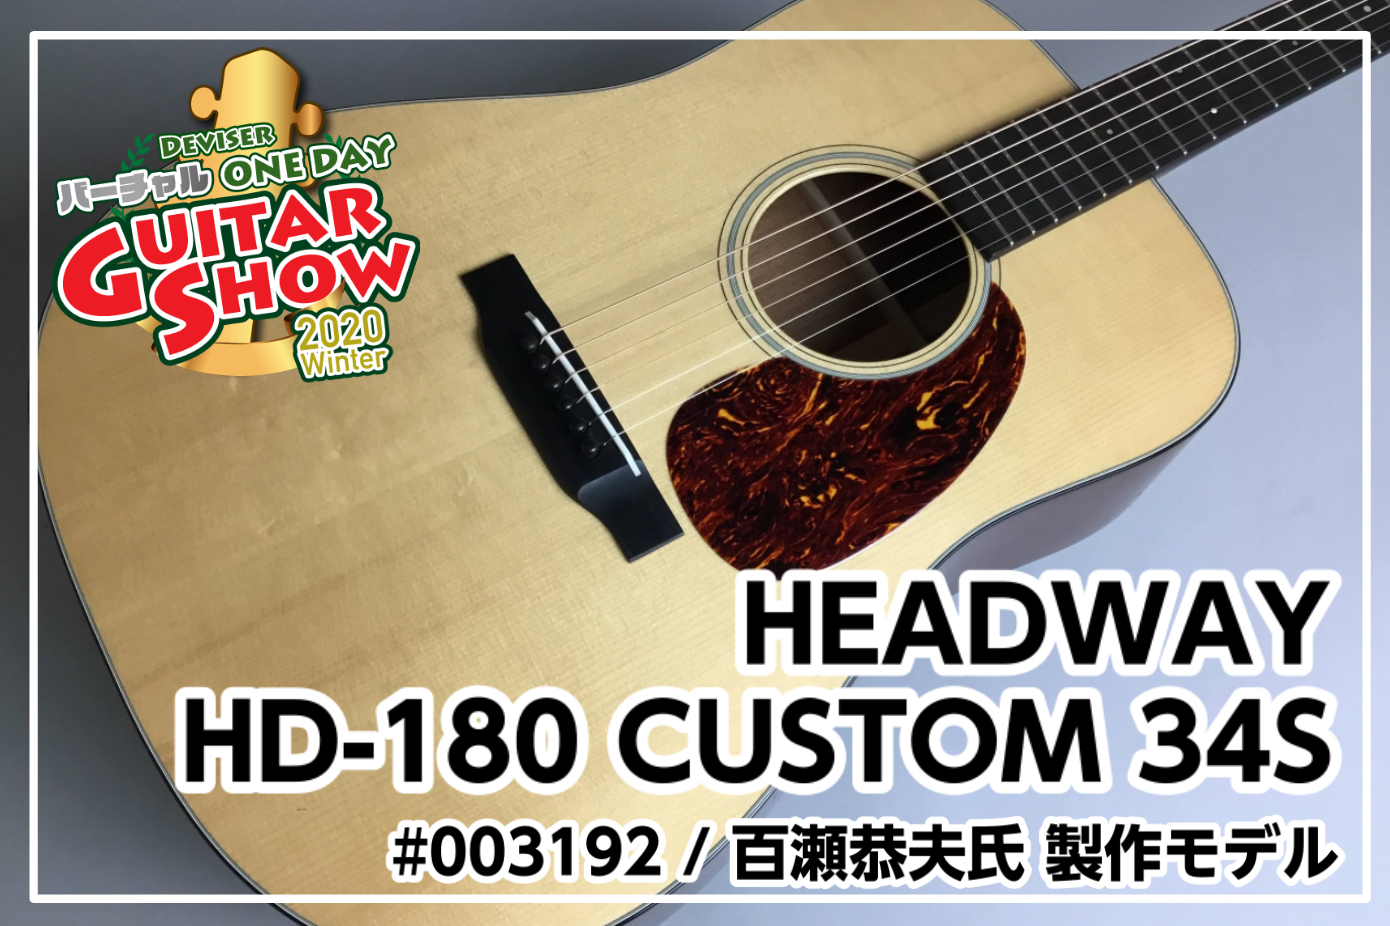 【限定モデル】HEADWAY HD-180 CUSTOM 34S #003192 ディバイザー・バーチャルOne Day Guitar Show展示！ 百瀬恭夫氏 製作モデル